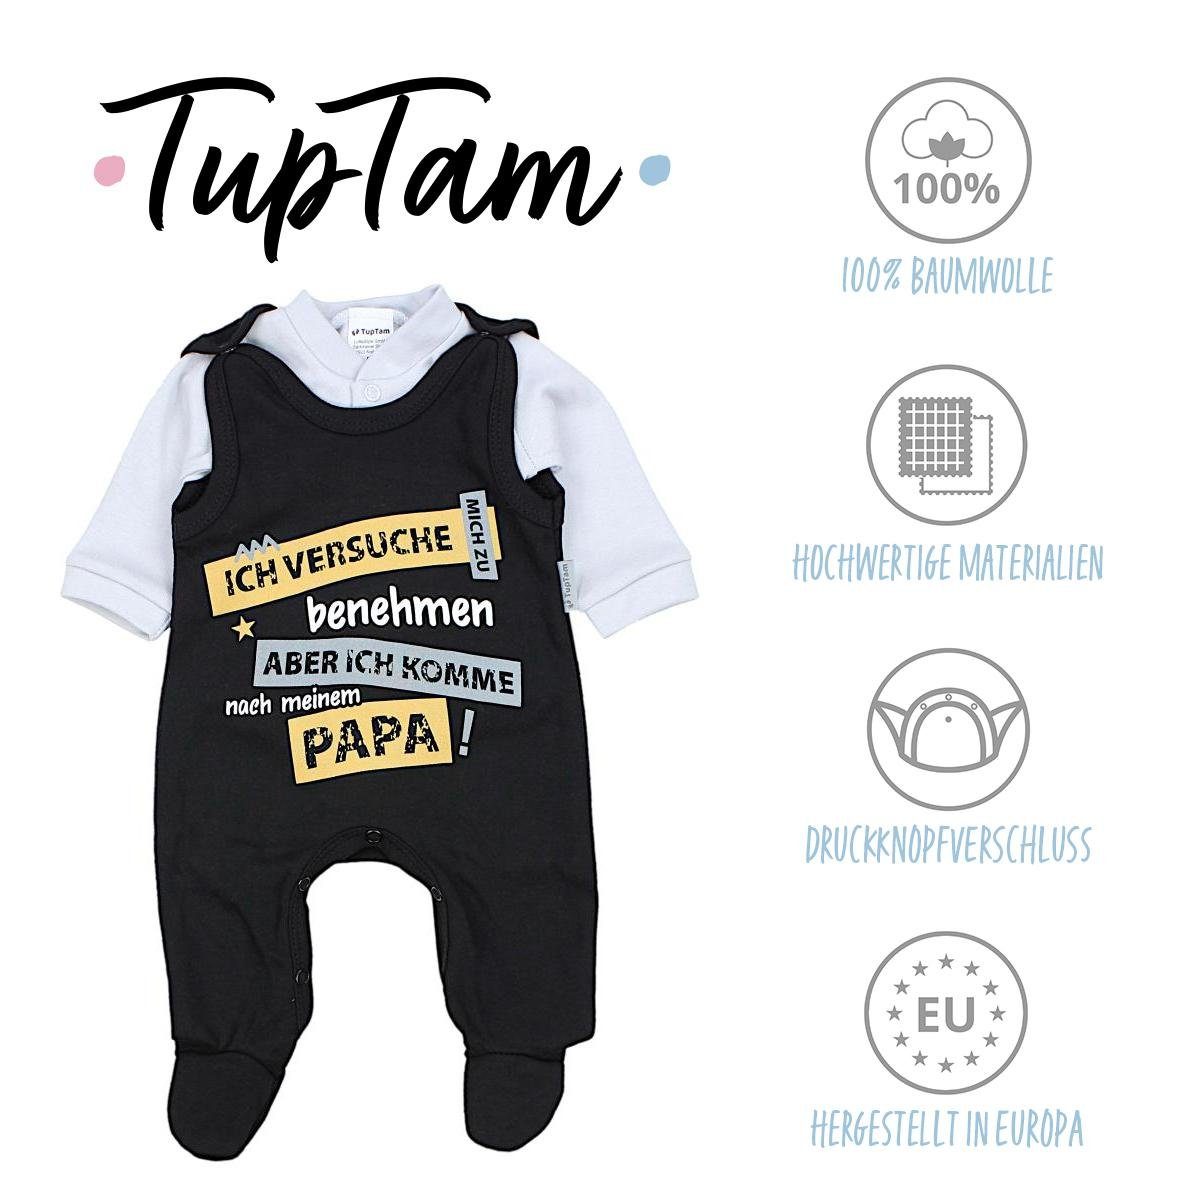 TupTam Erstausstattungspaket TupTam Unisex Baby zu benehmen... versuche Papas Schwarz Schatz Mamas & mich Ich Set / Strampler Spruch